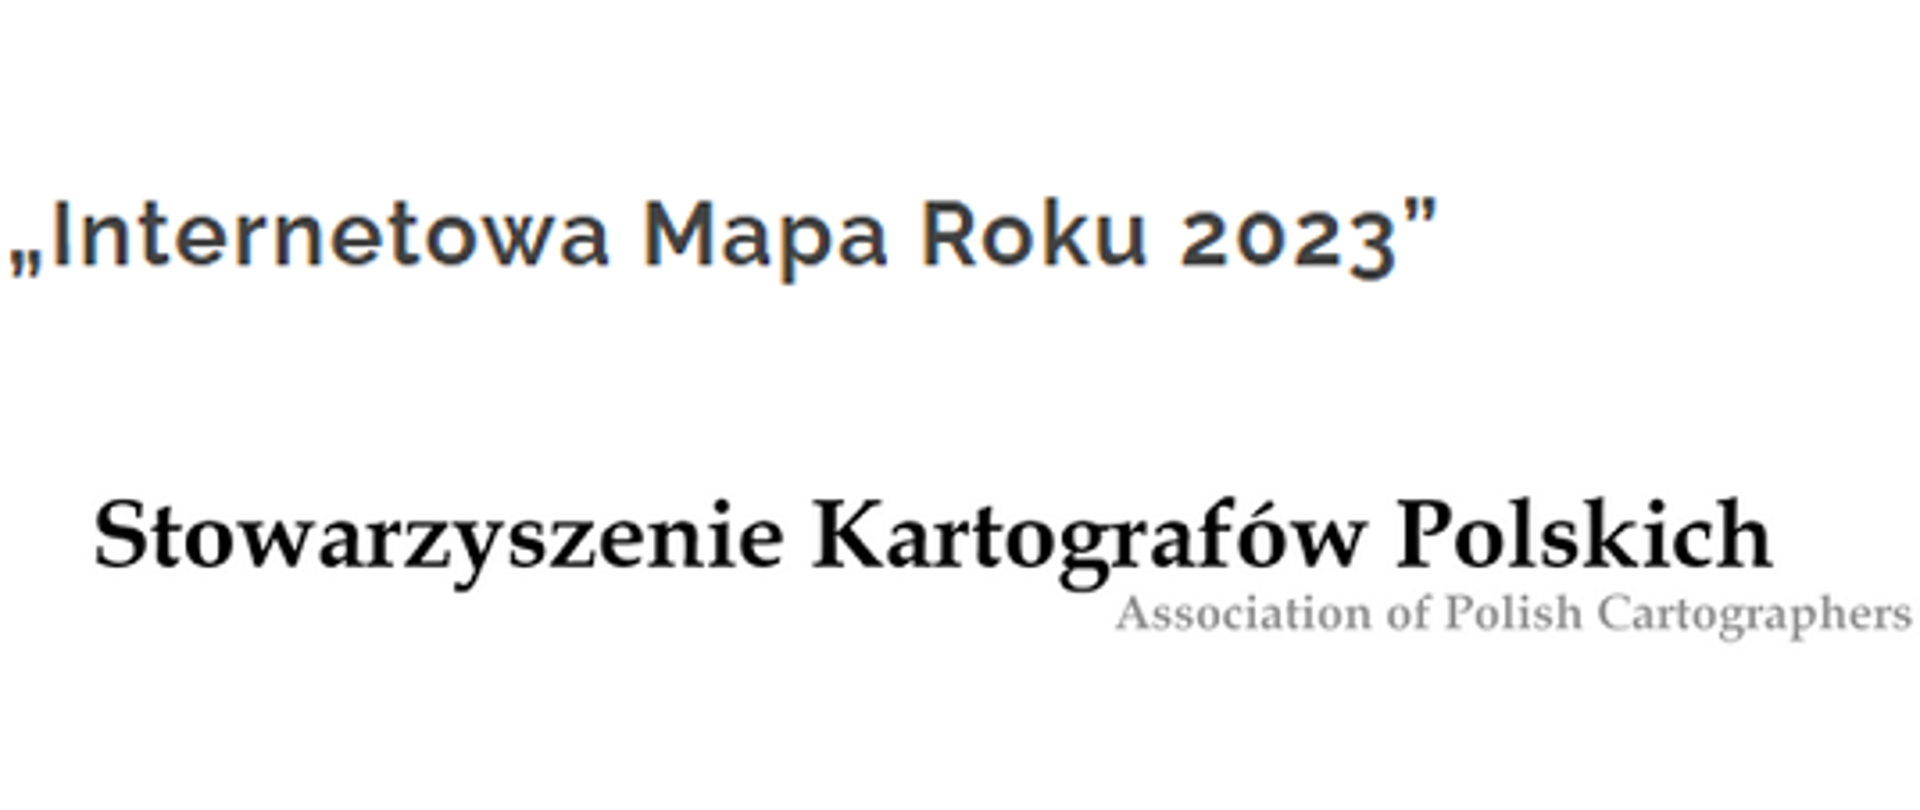 aner z napisem "Internetowa Mapa Roku 2023" oraz napisem "Stowarzyszenie Kartografów Polskich" i logiem stowarzyszenia